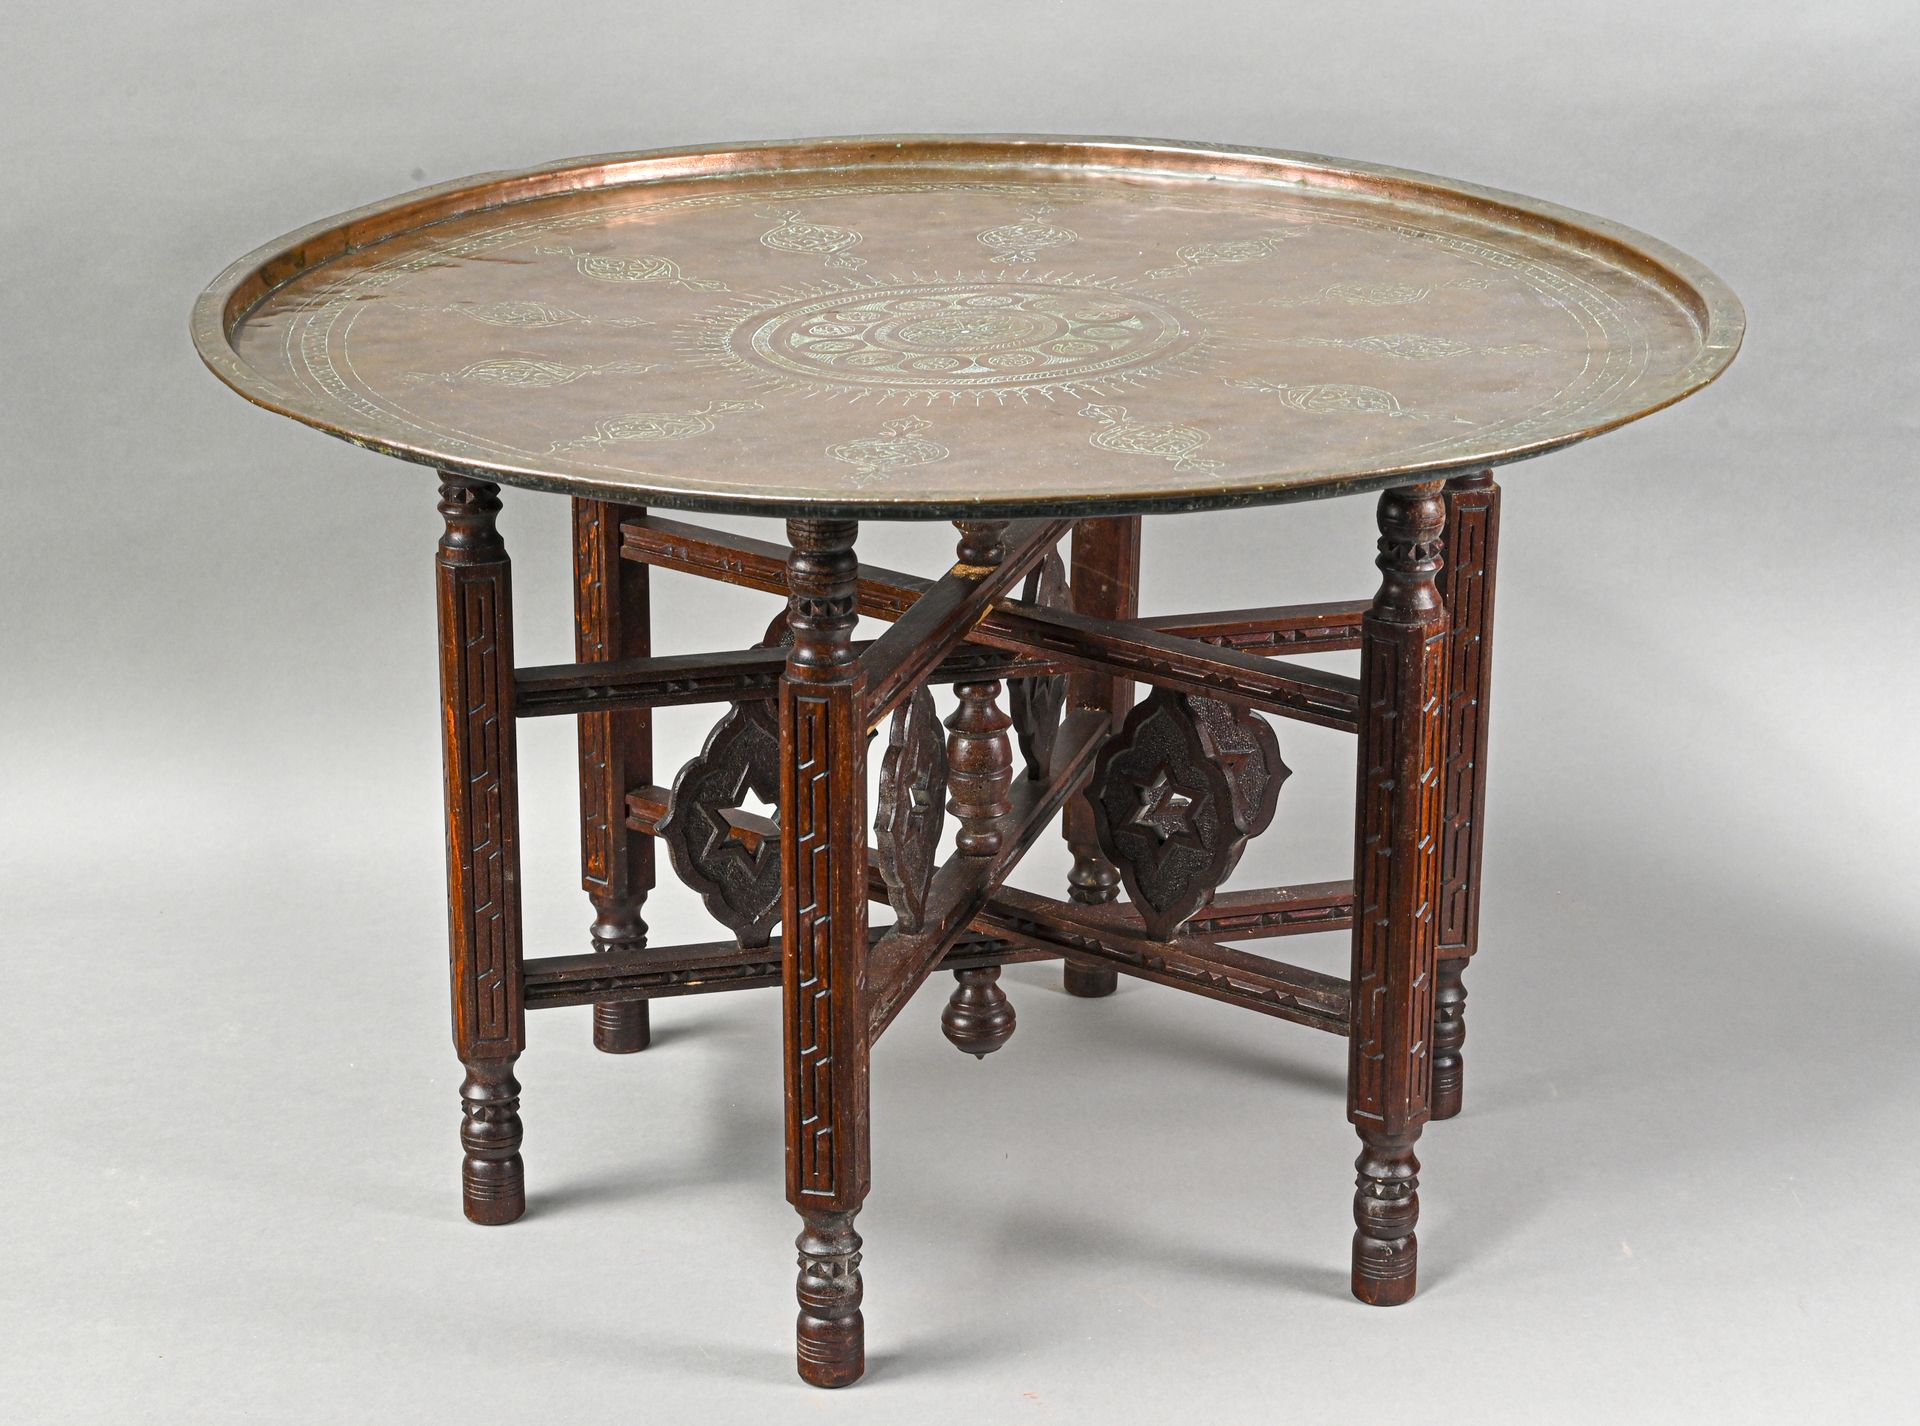 Table à thé 由一个雕刻的铜制顶部和一个有六条腿的雕刻的木制铰接式底座组成，装饰有镂空的星星

H.47 cm - D. 77 cm

凹痕和磨损